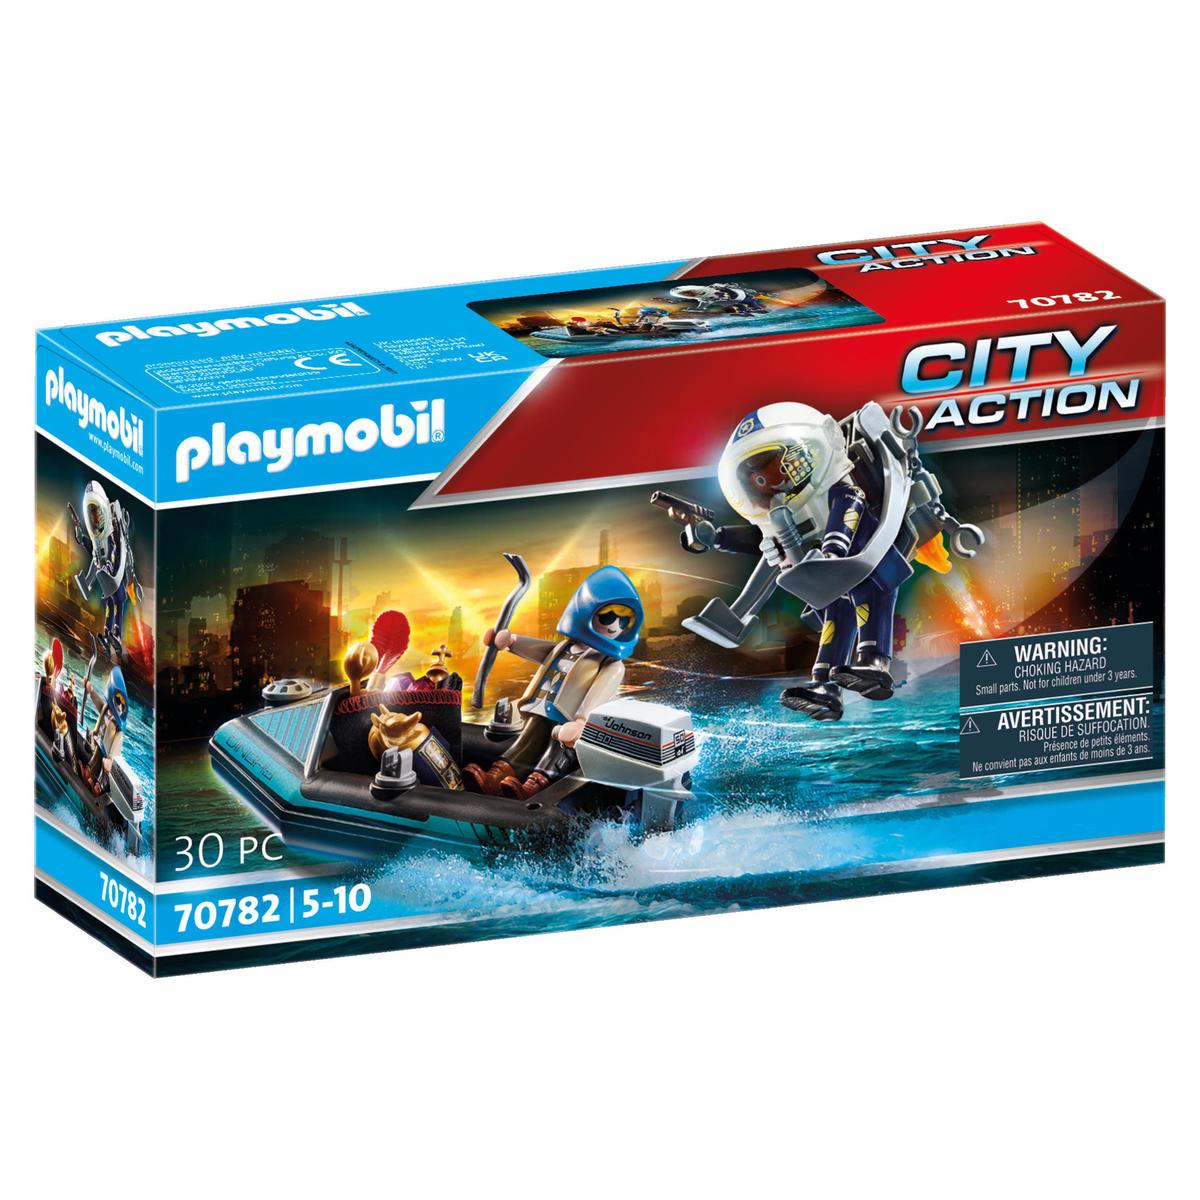 Bateau playmobil action et personnages - Playmobil